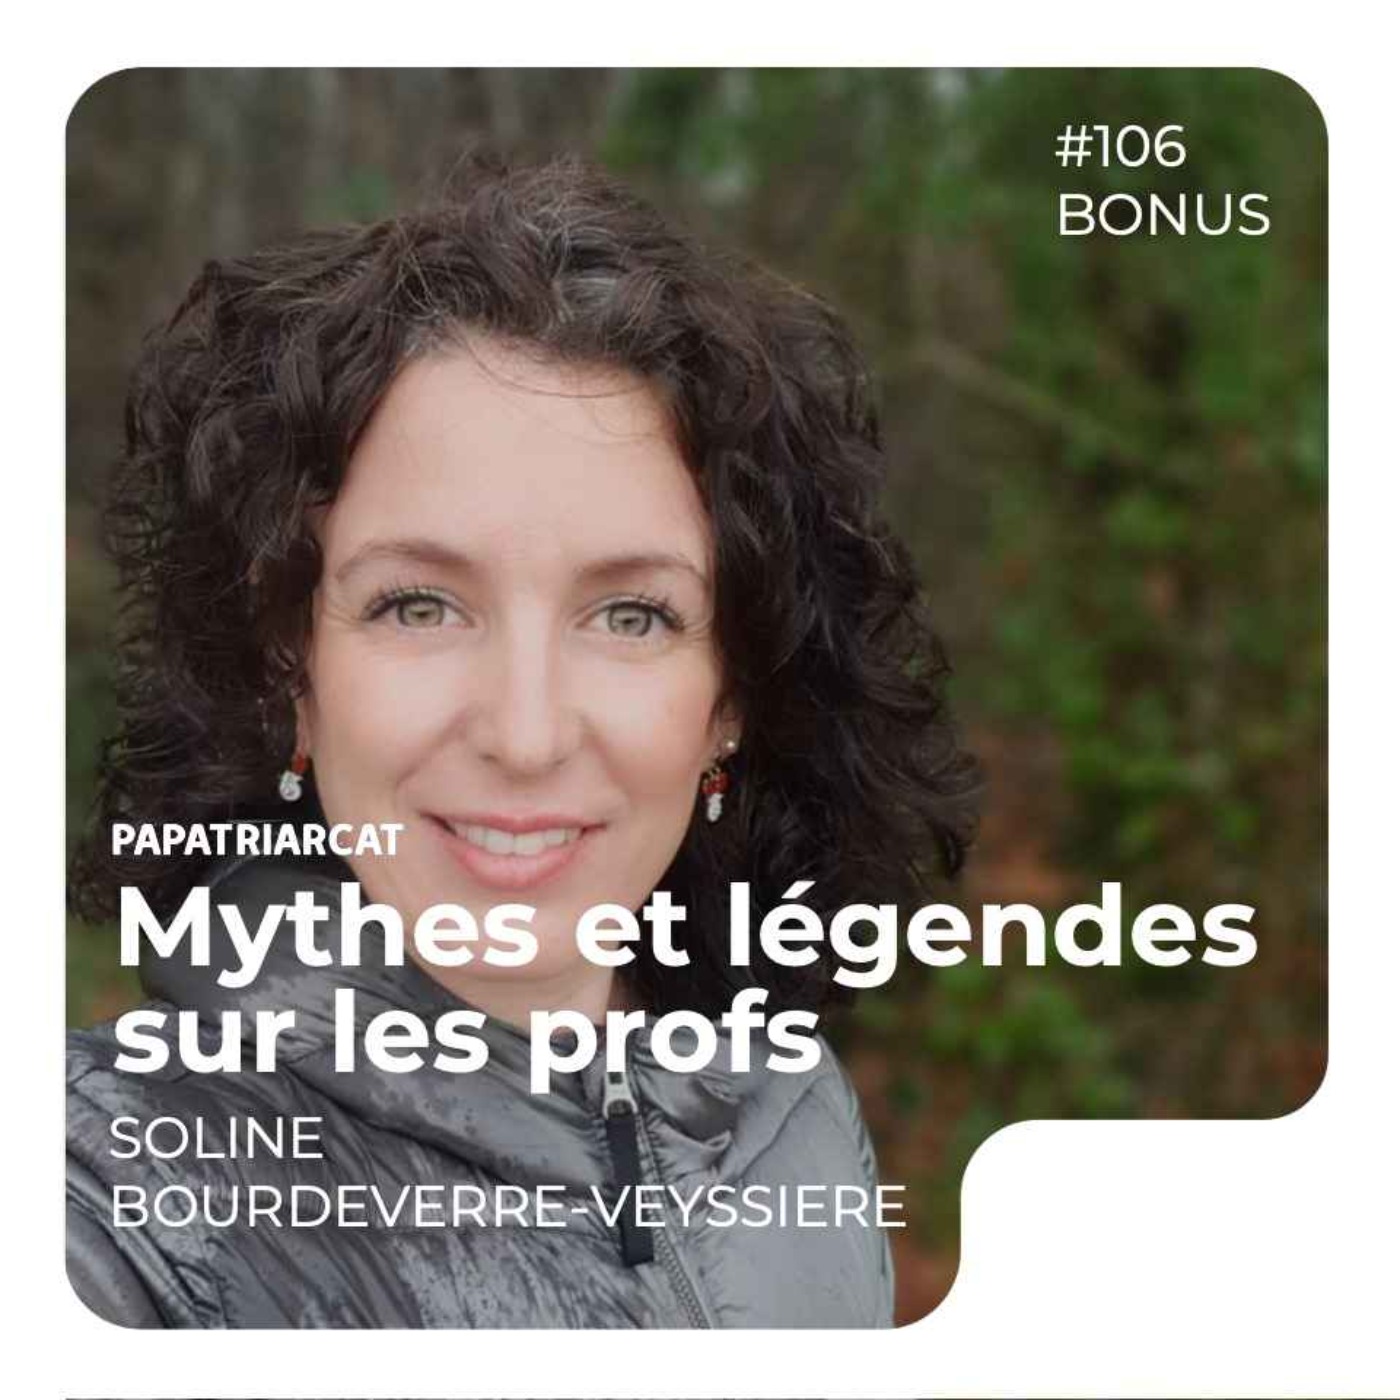 DECOUVERTE BONUS #106 - Mythes et légendes sur les profs - Soline Bourdeverre-Veyssiere